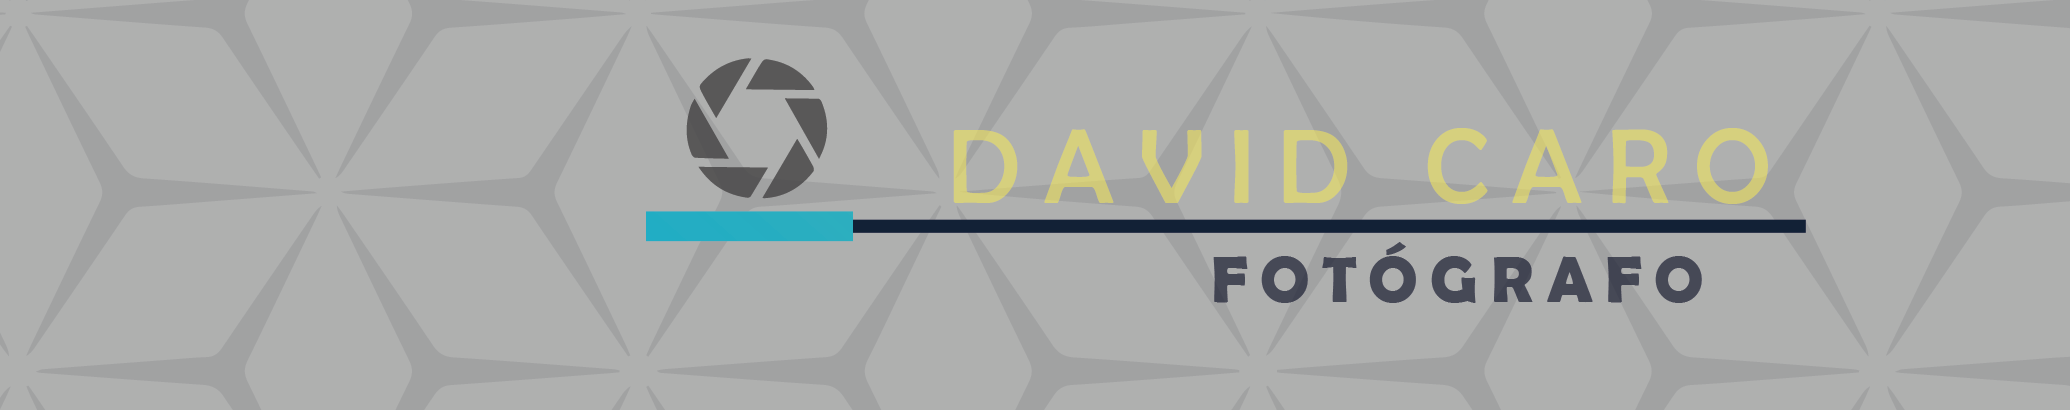 DAVID CARO's profile banner